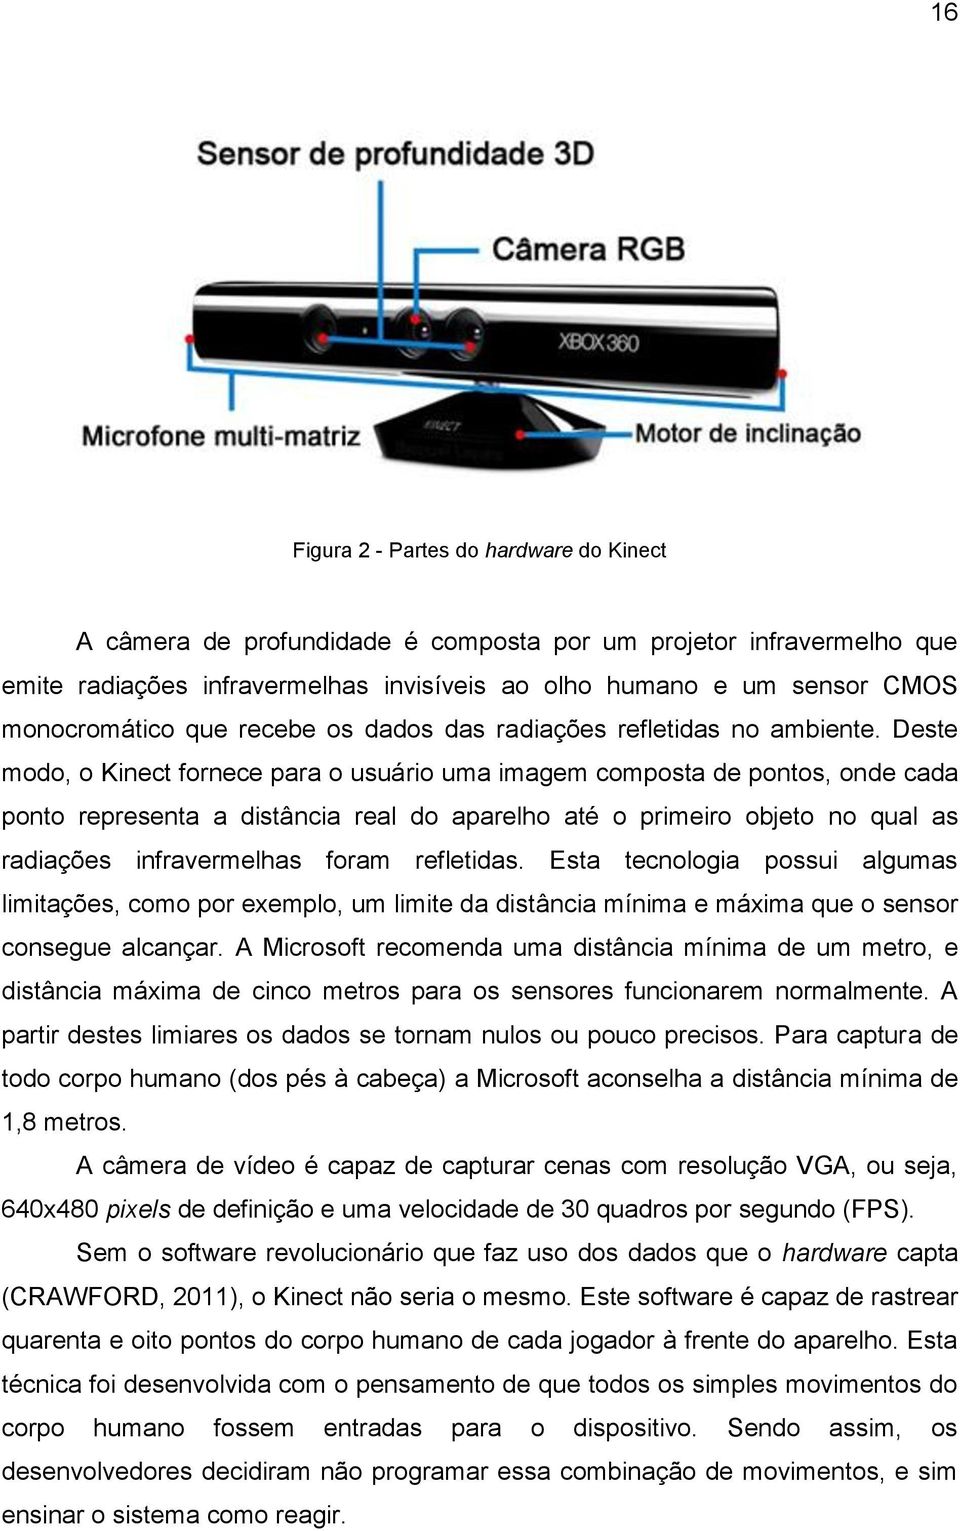 Deste modo, o Kinect fornece para o usuário uma imagem composta de pontos, onde cada ponto representa a distância real do aparelho até o primeiro objeto no qual as radiações infravermelhas foram